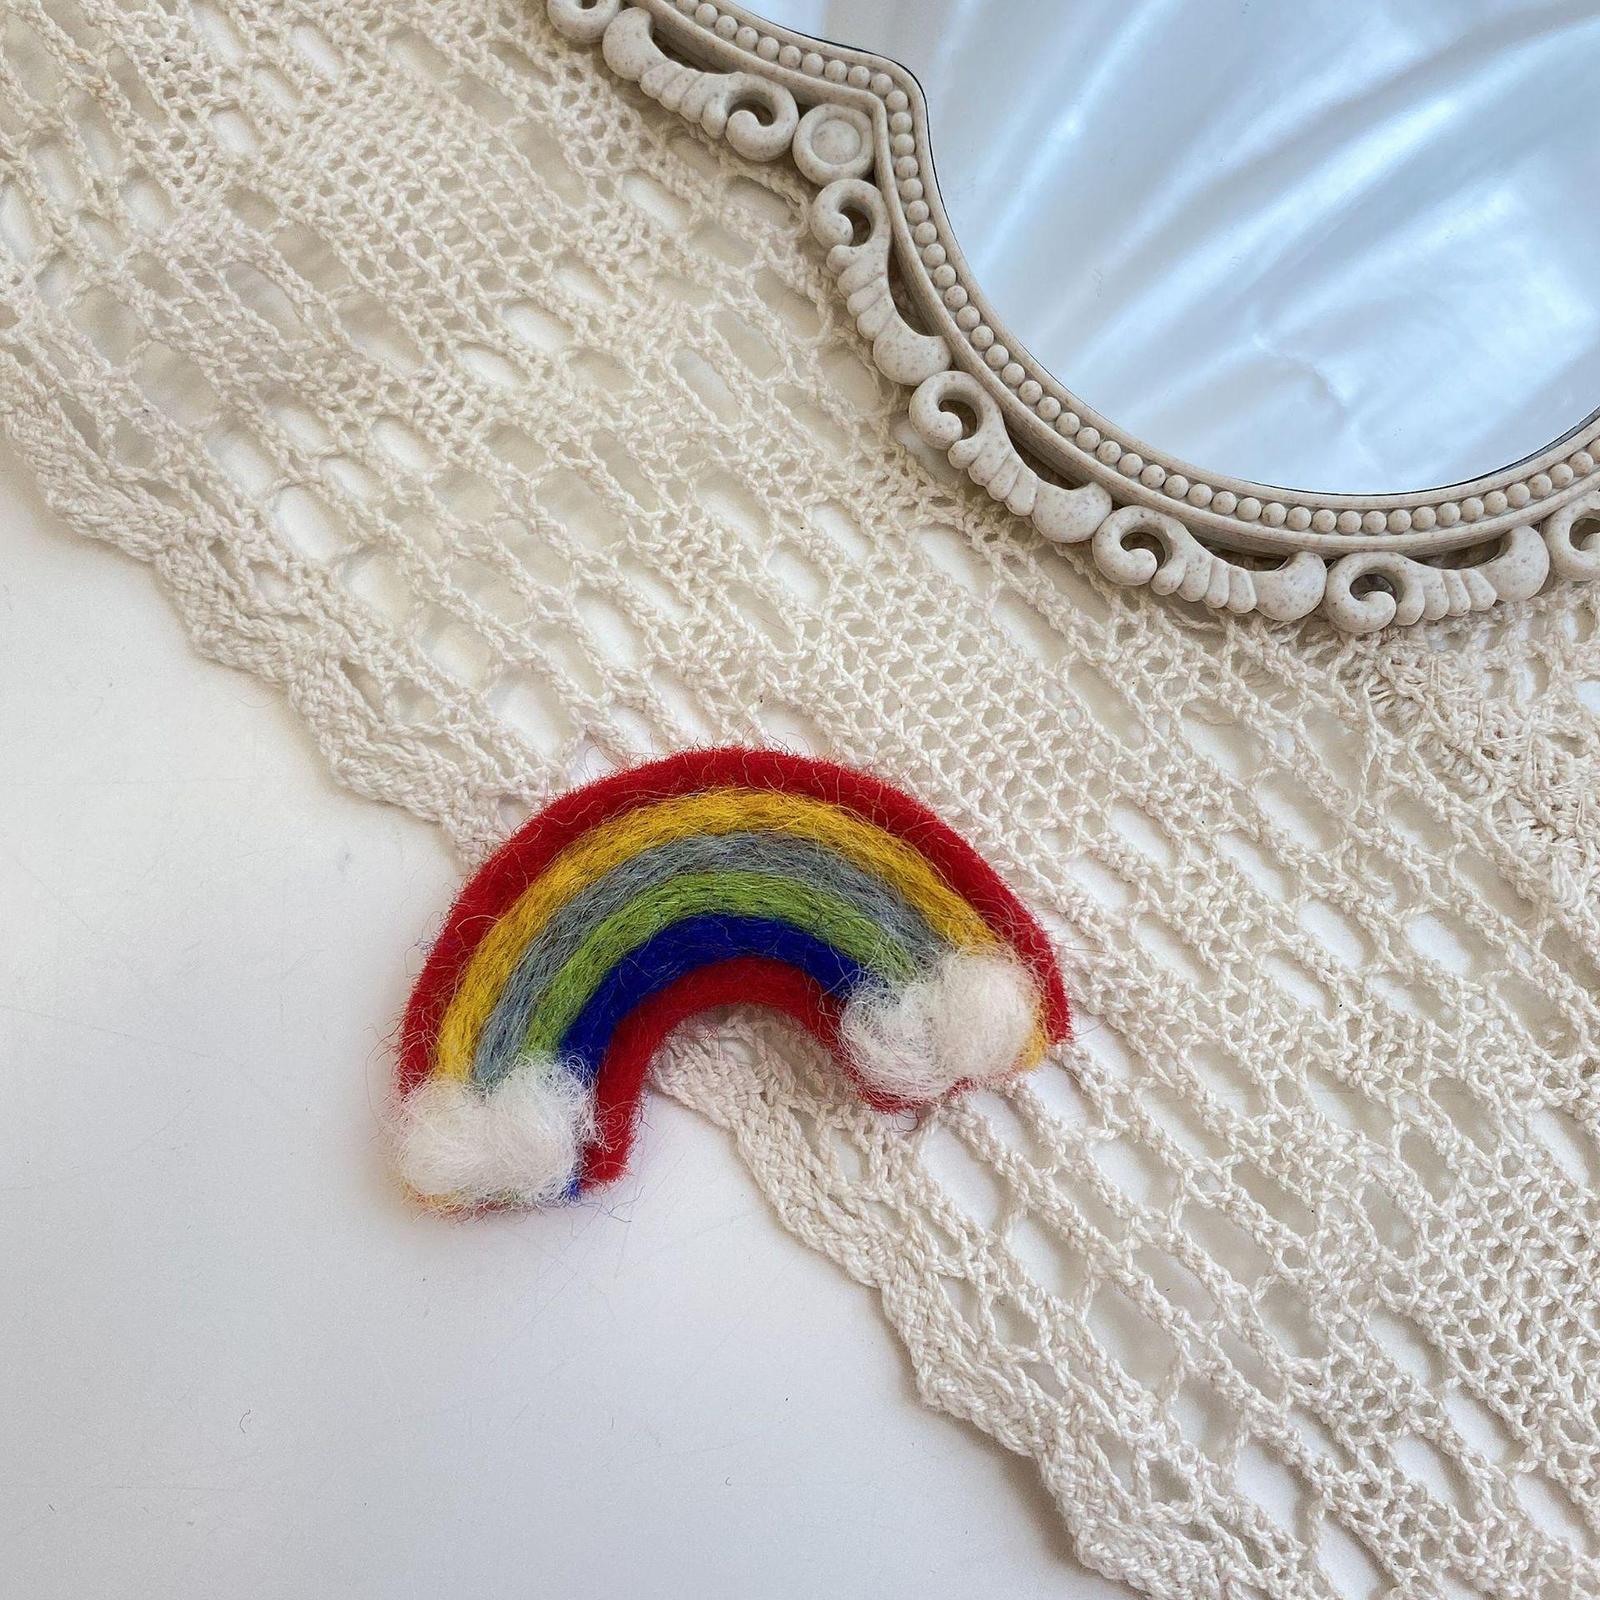 Rainbow Handmade Wool Felt Fashion Hairpins Hair Clips Accessories for Bangs Girls